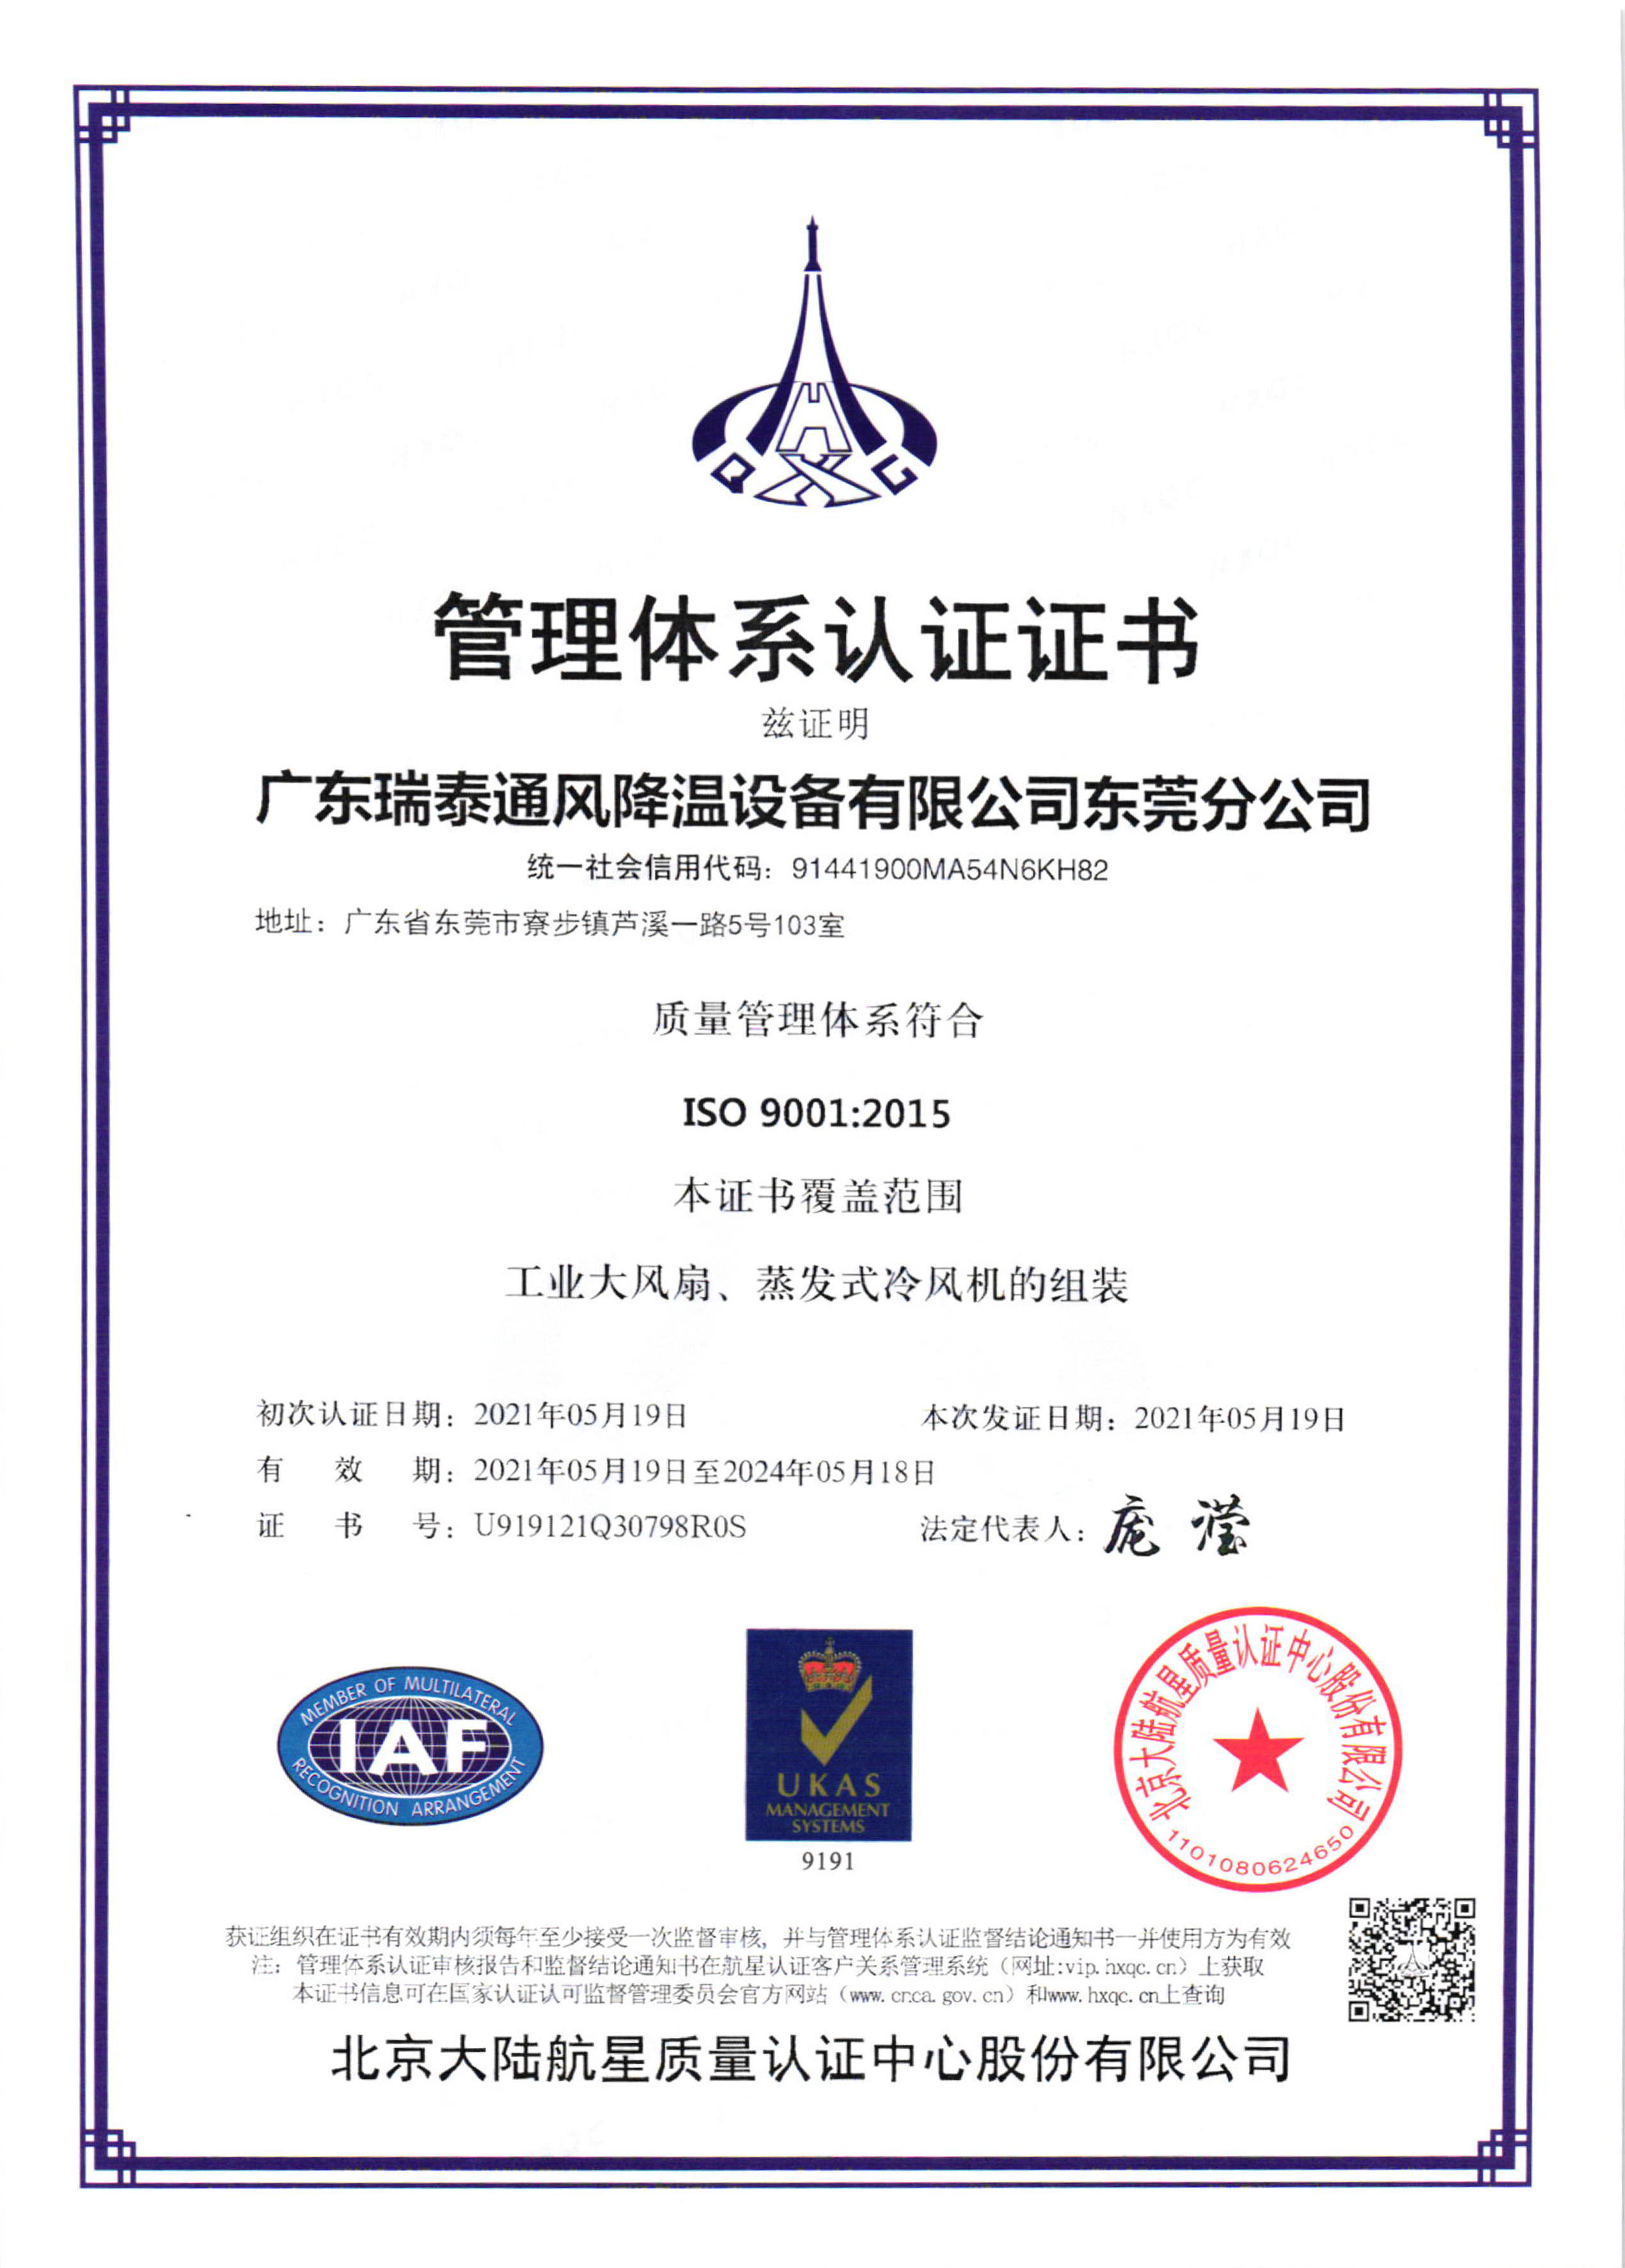 瑞泰风ISO9001:2015证书